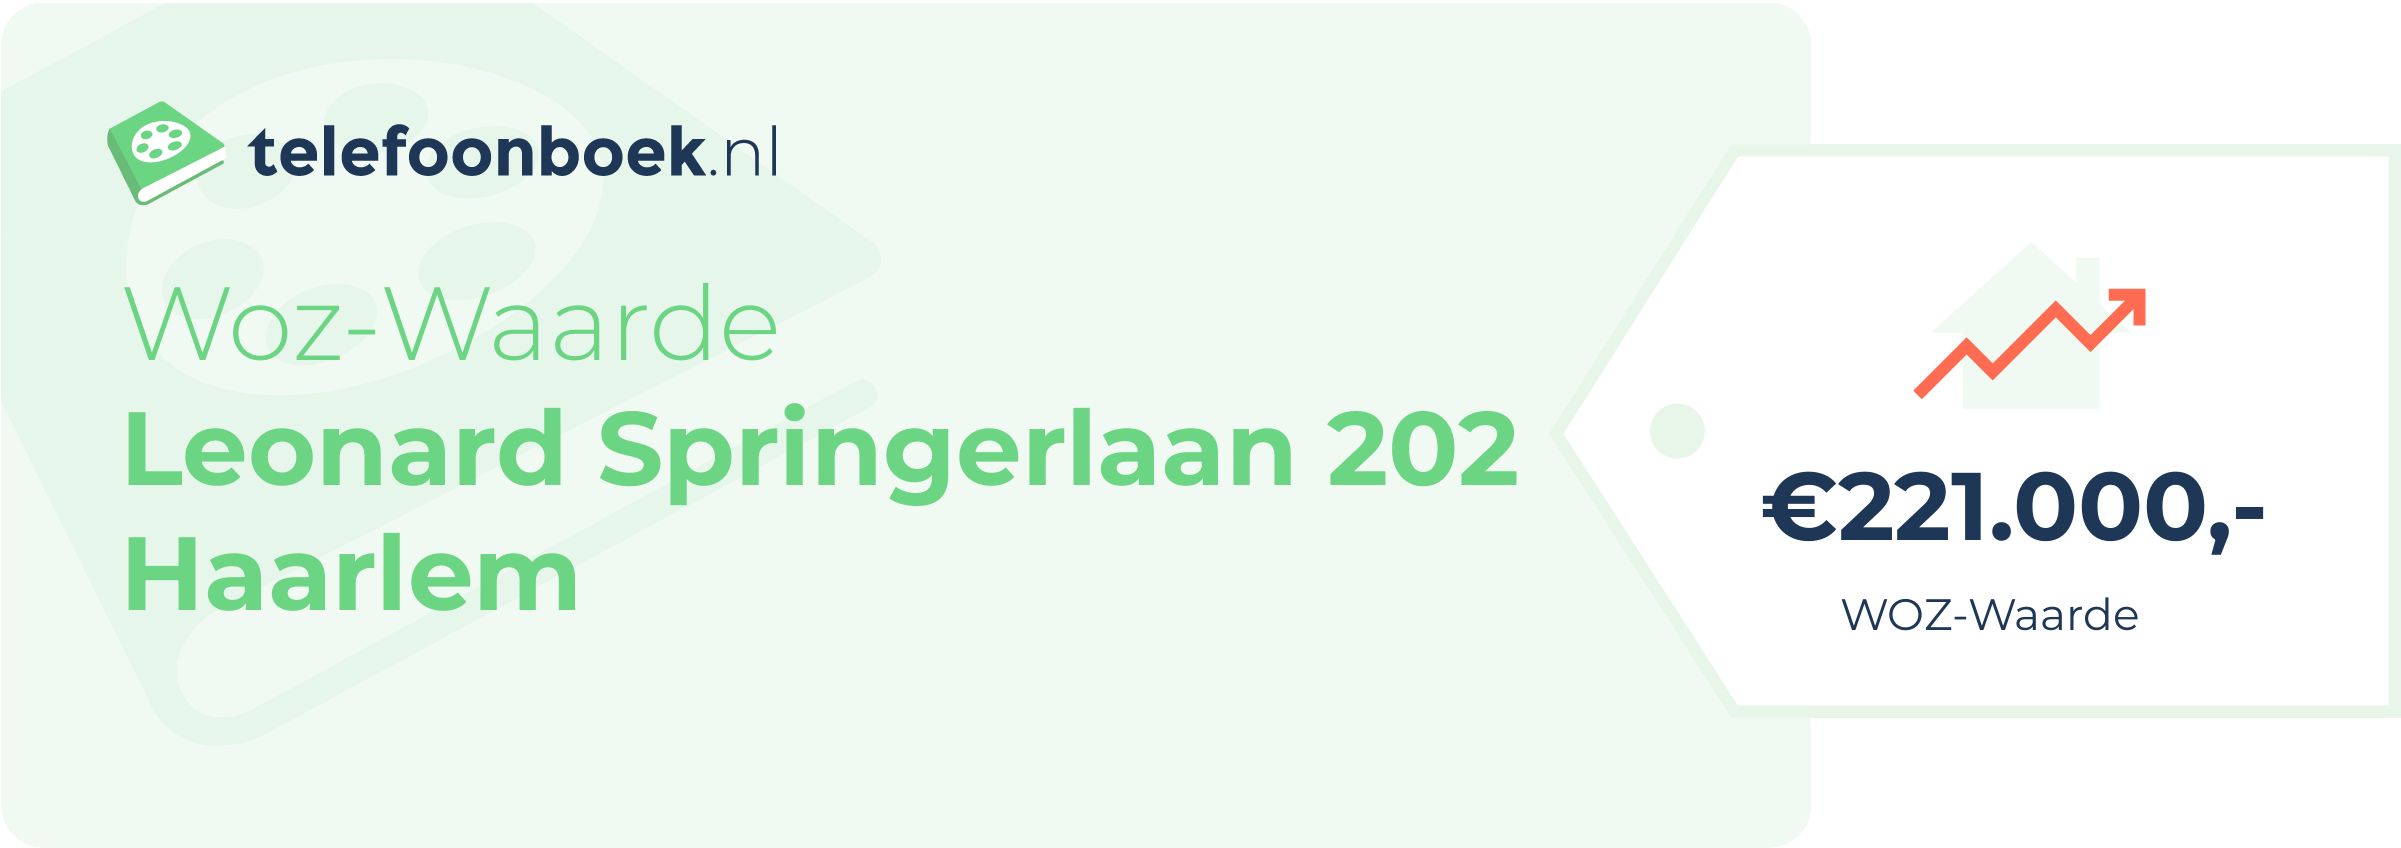 WOZ-waarde Leonard Springerlaan 202 Haarlem